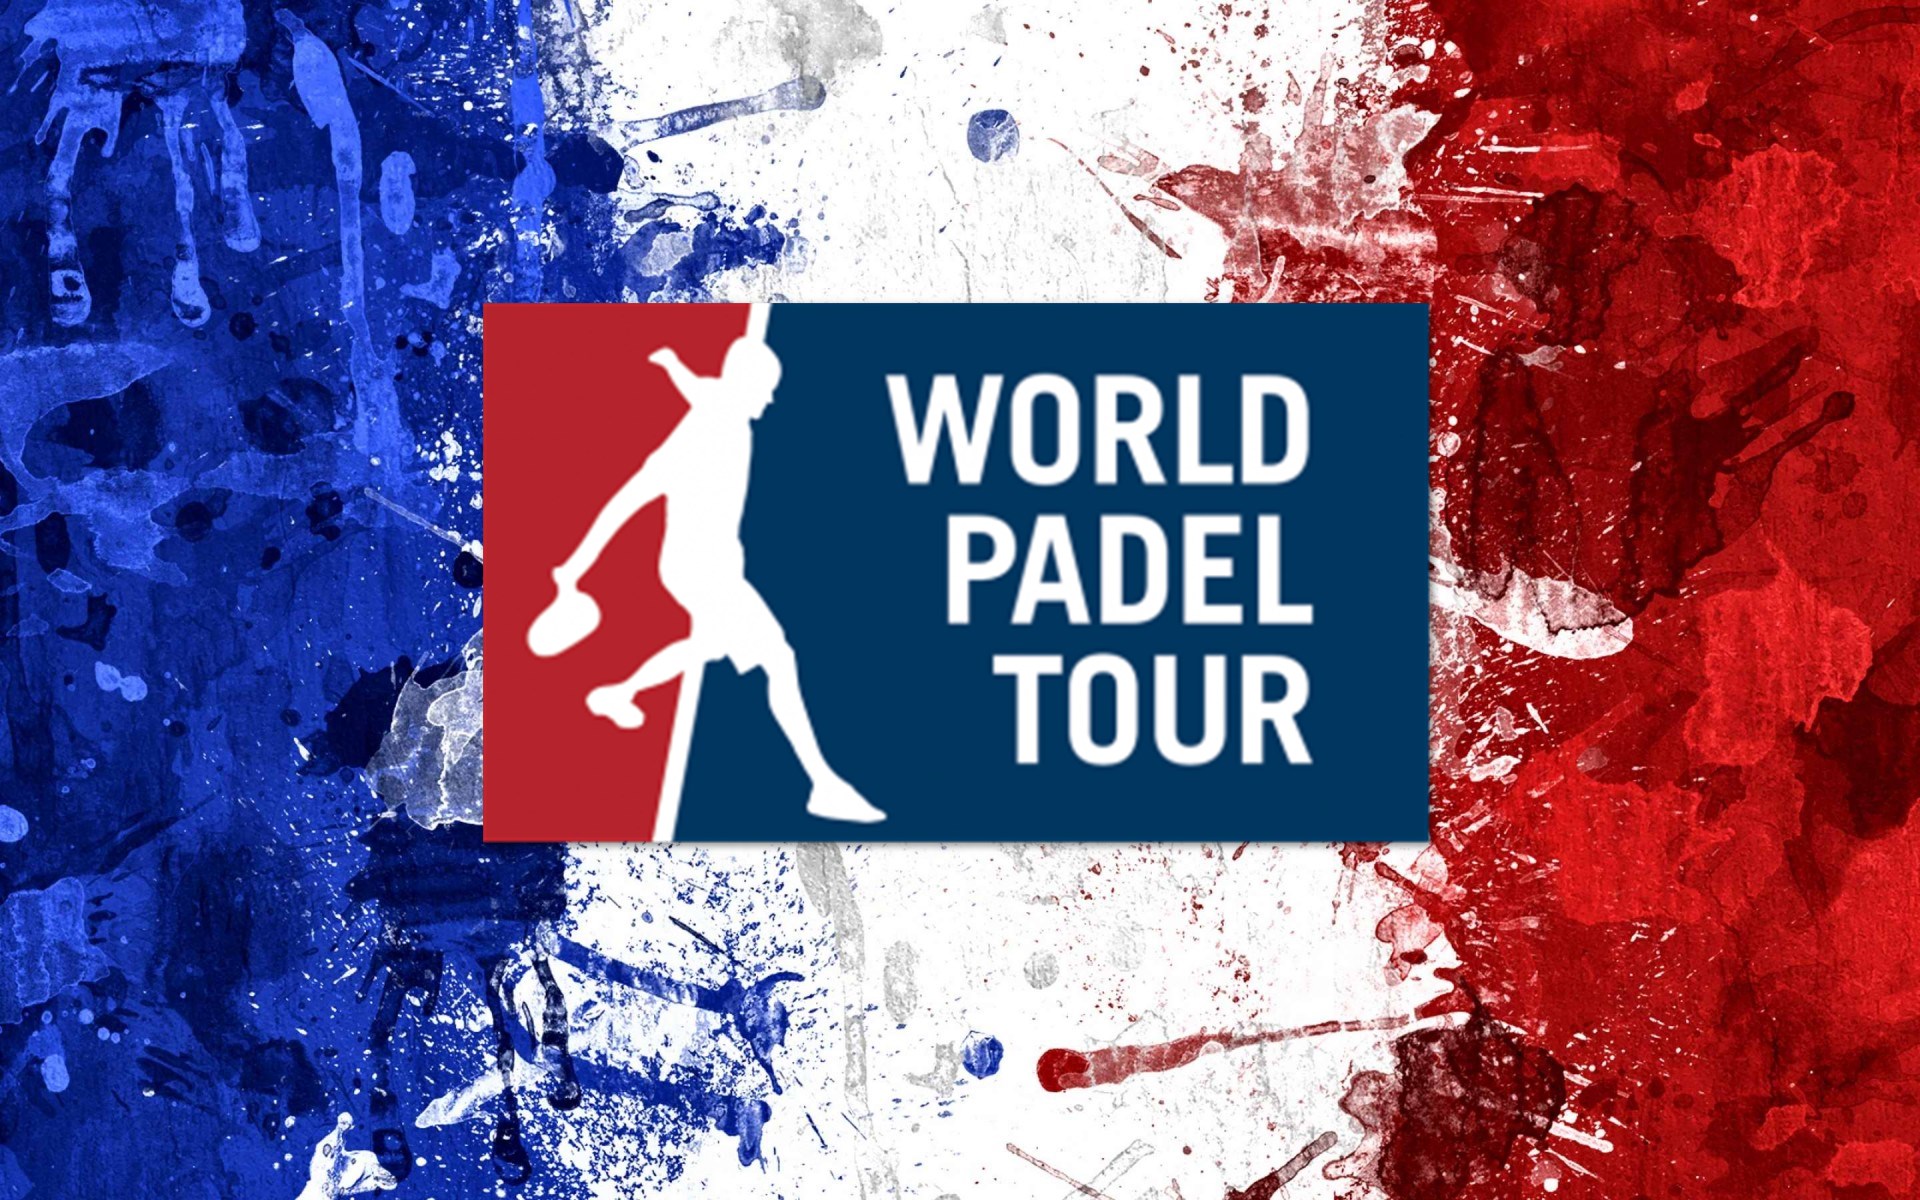 world padel tour フランス